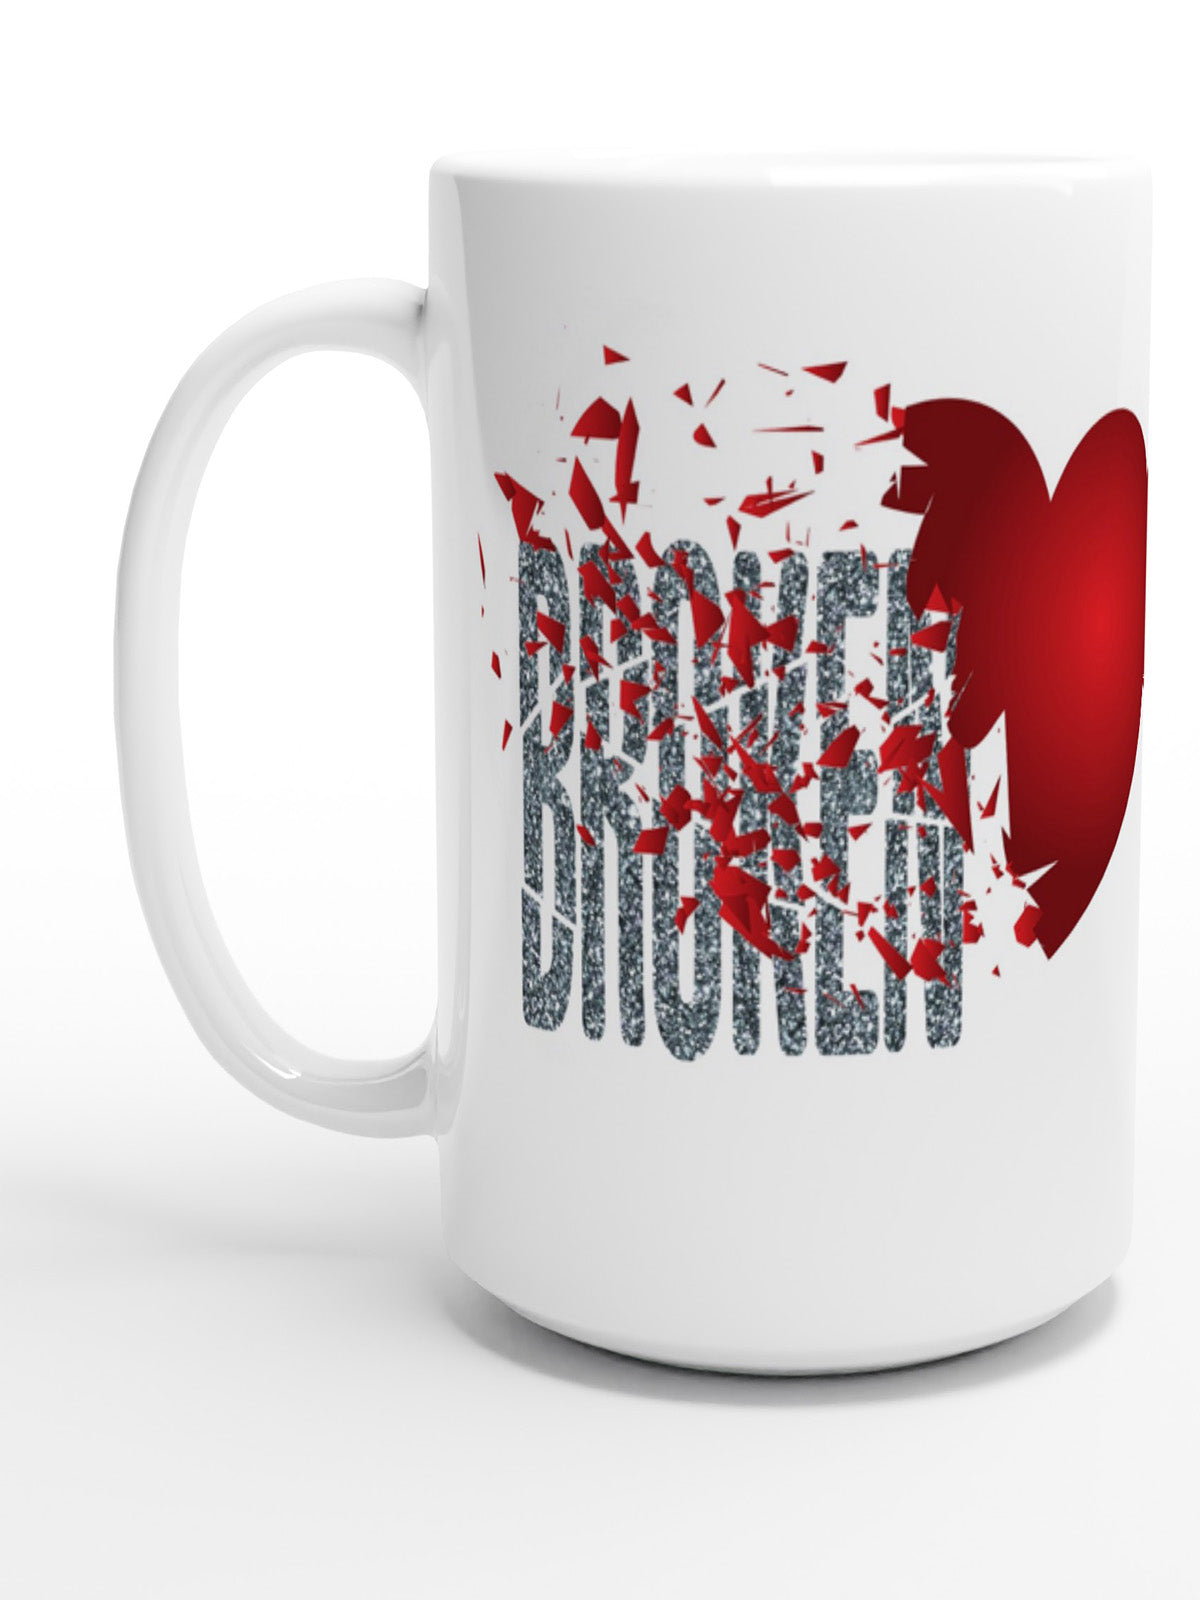 Broken Heart - White Ceramic Mug